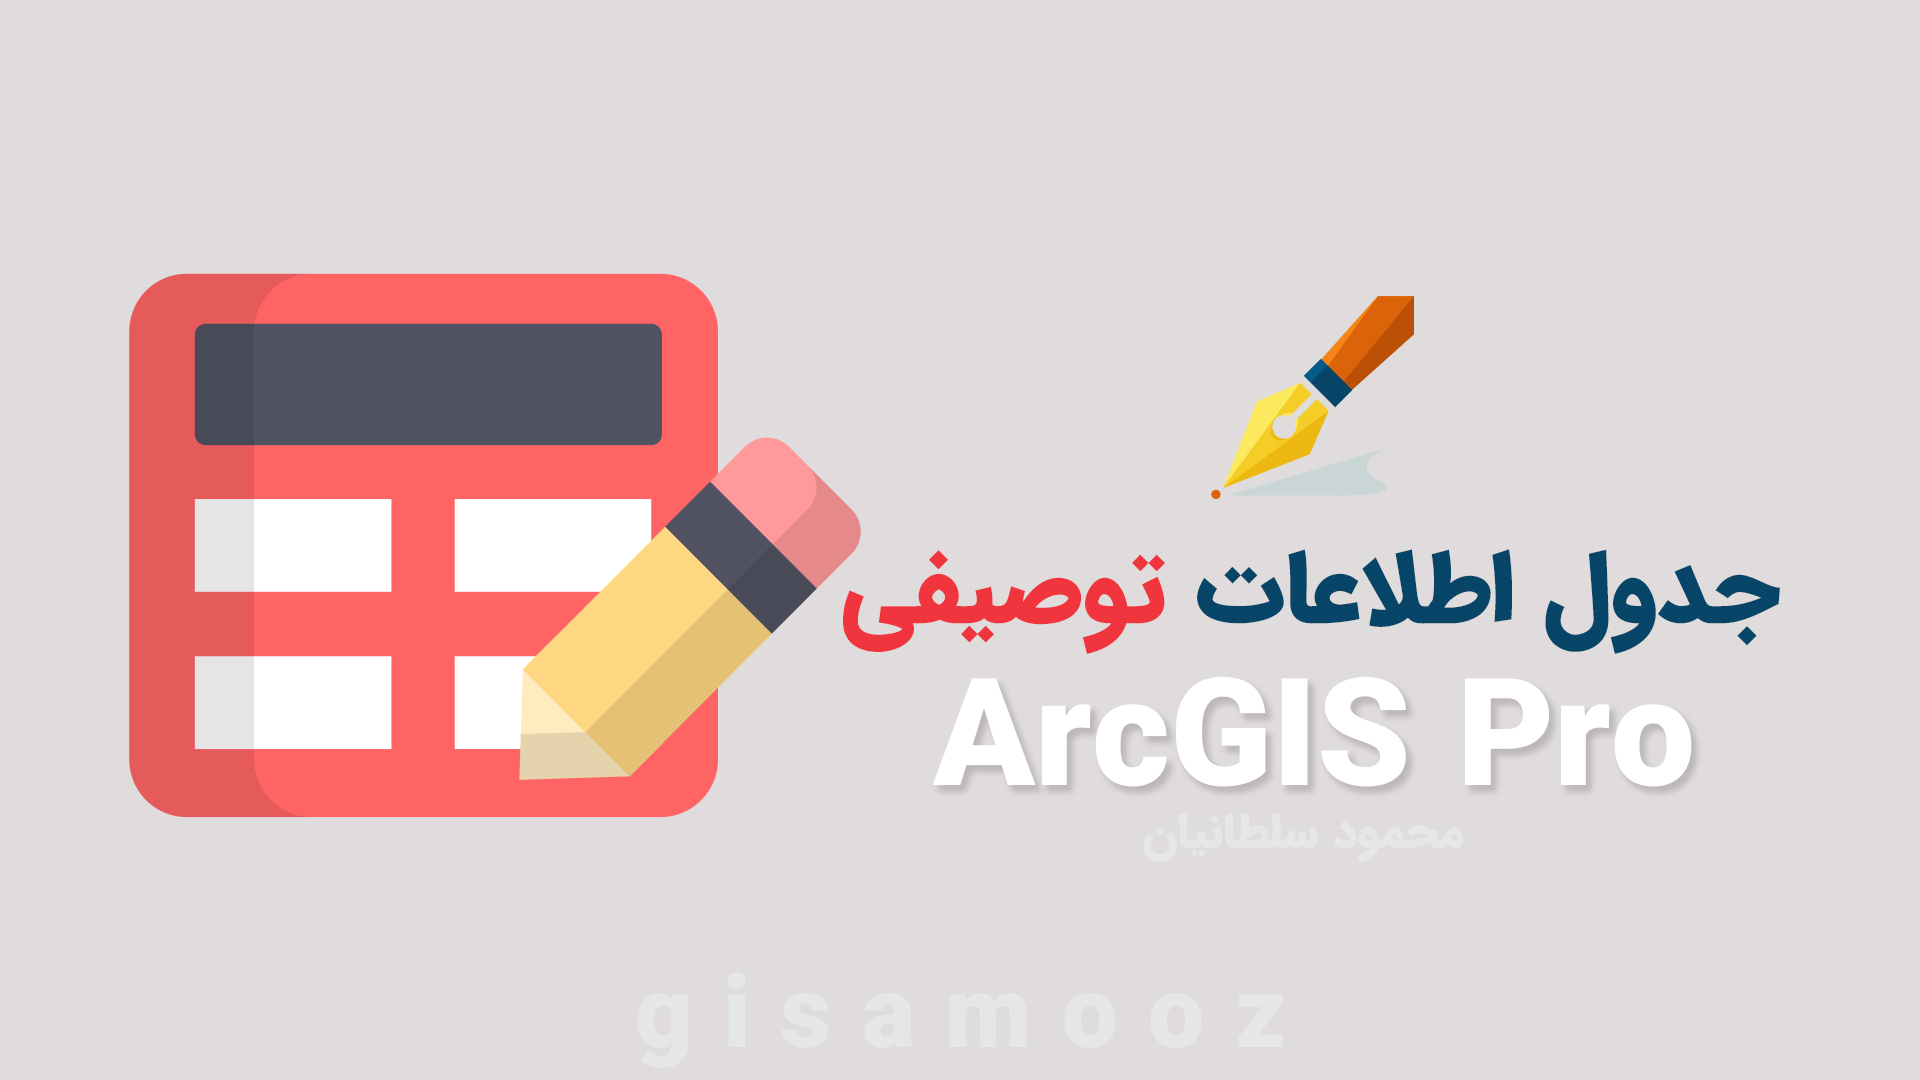 جدول اطلاعاتی در ArcGIS Pro